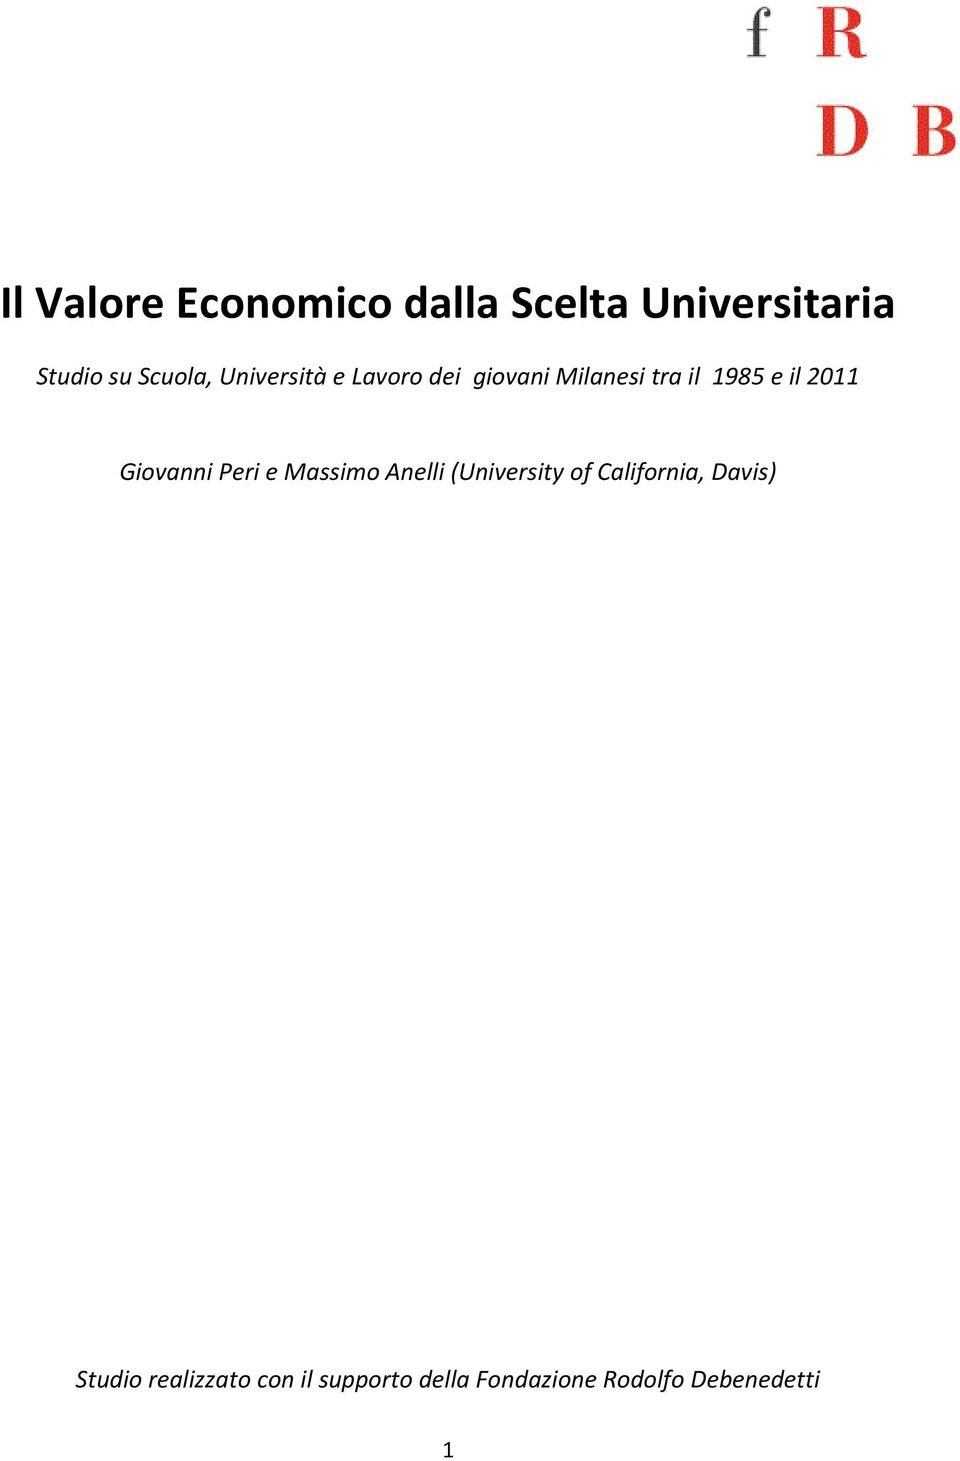 Giovanni Peri e Massimo Anelli (University of California, Davis)